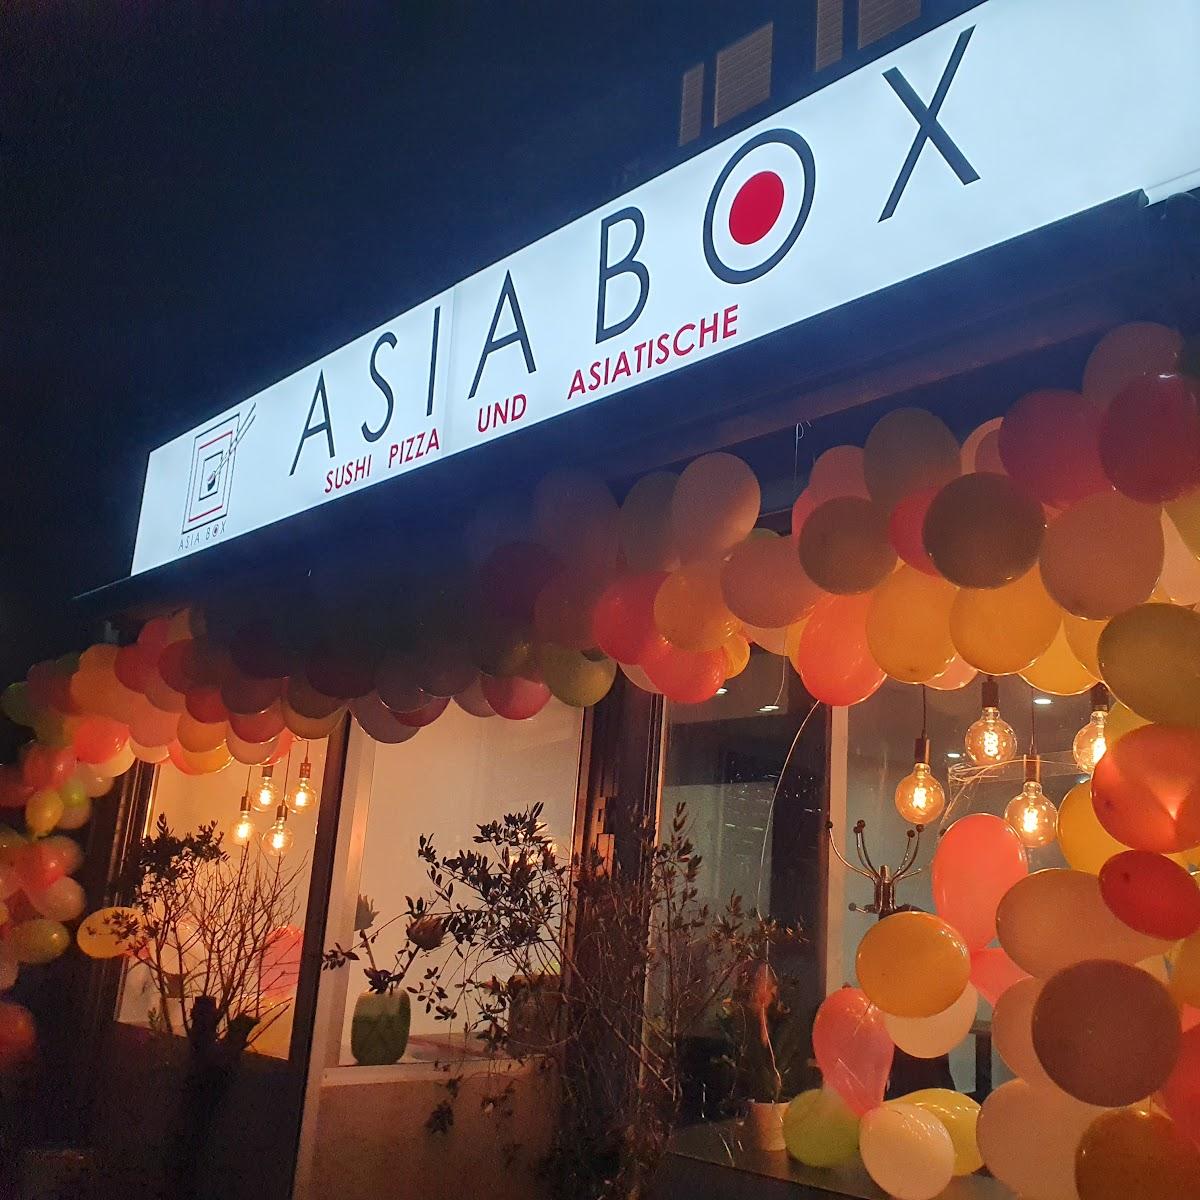 Restaurant "Asia Box Bickendorf" in Köln